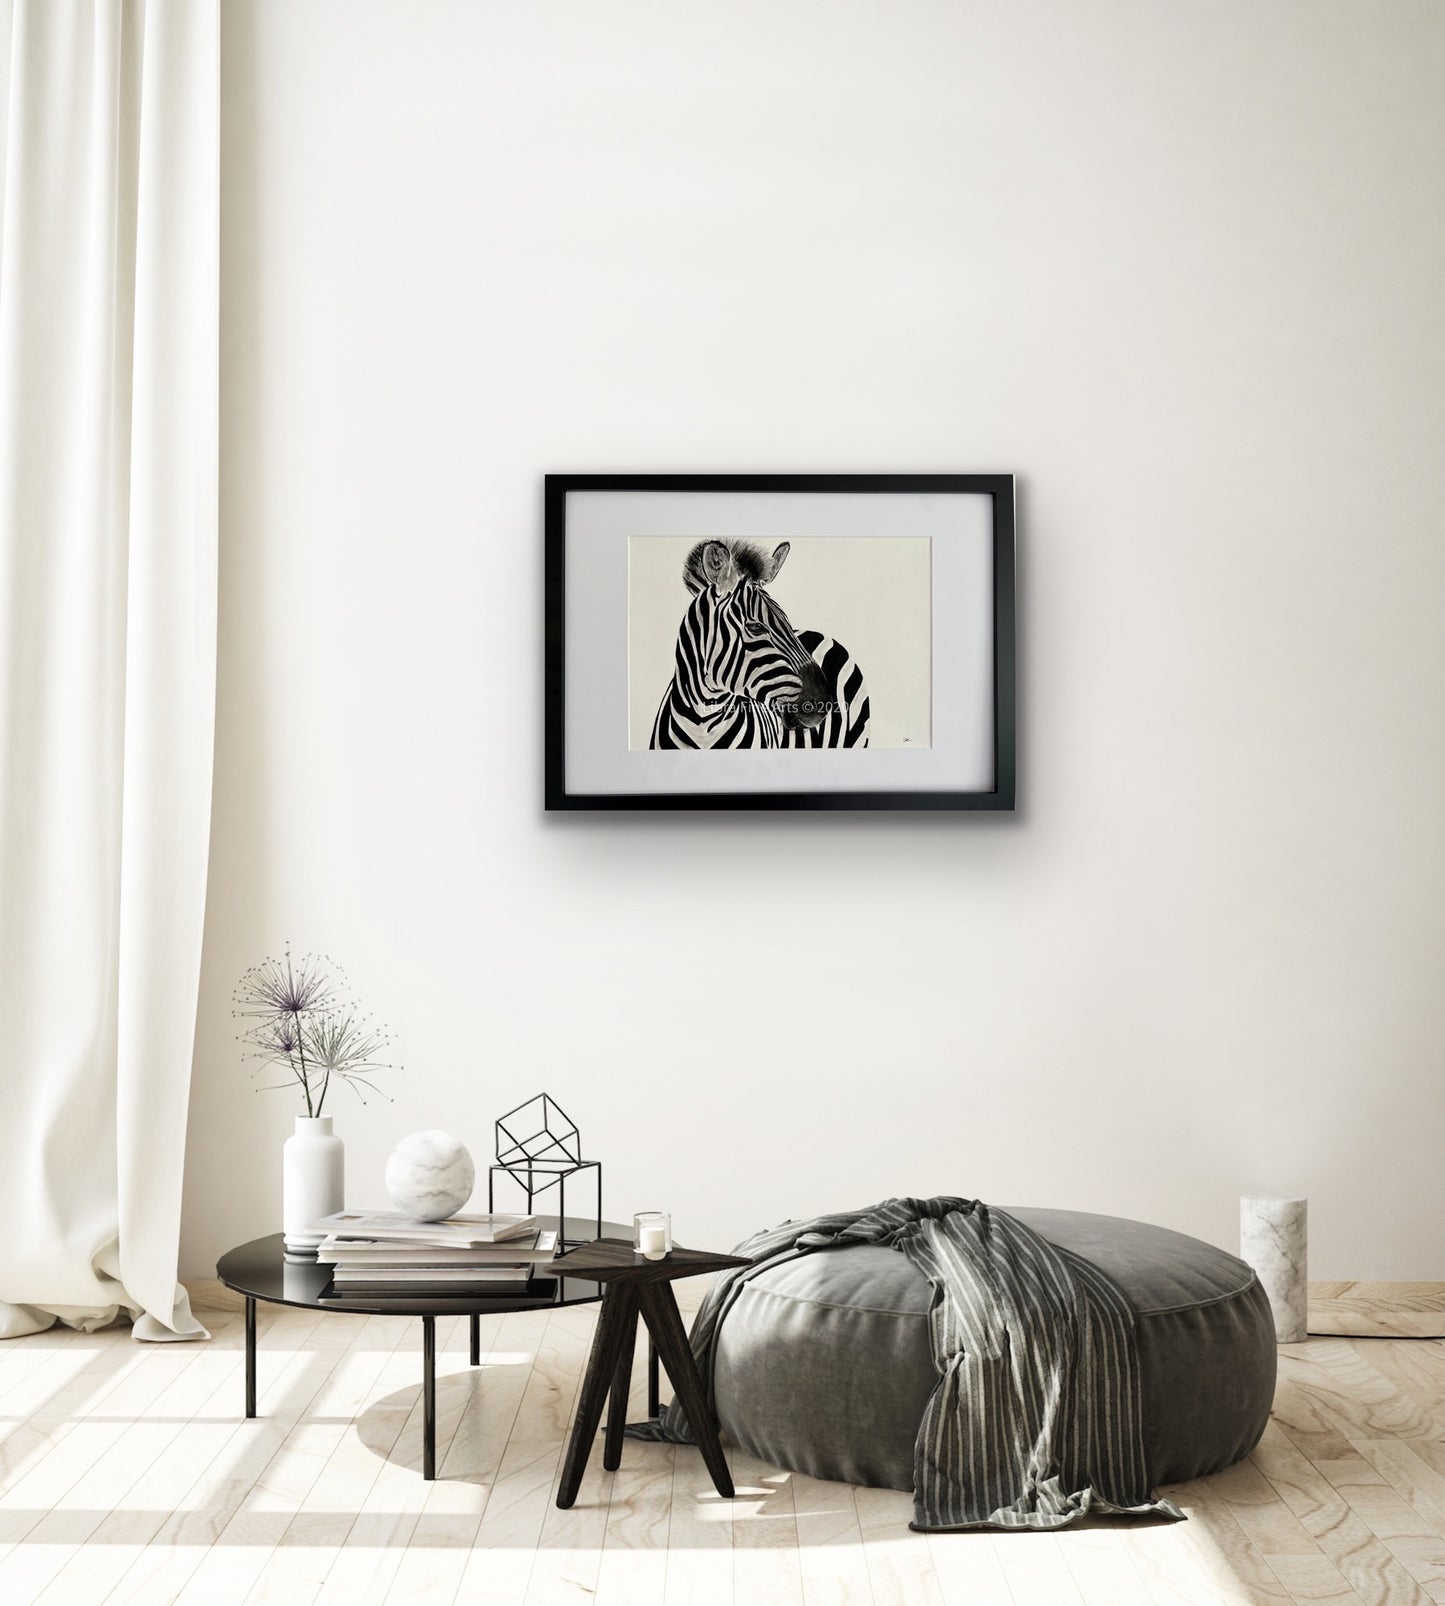 Capella the Zebra Fine Art Print - Wall Decor - Hand Drawn